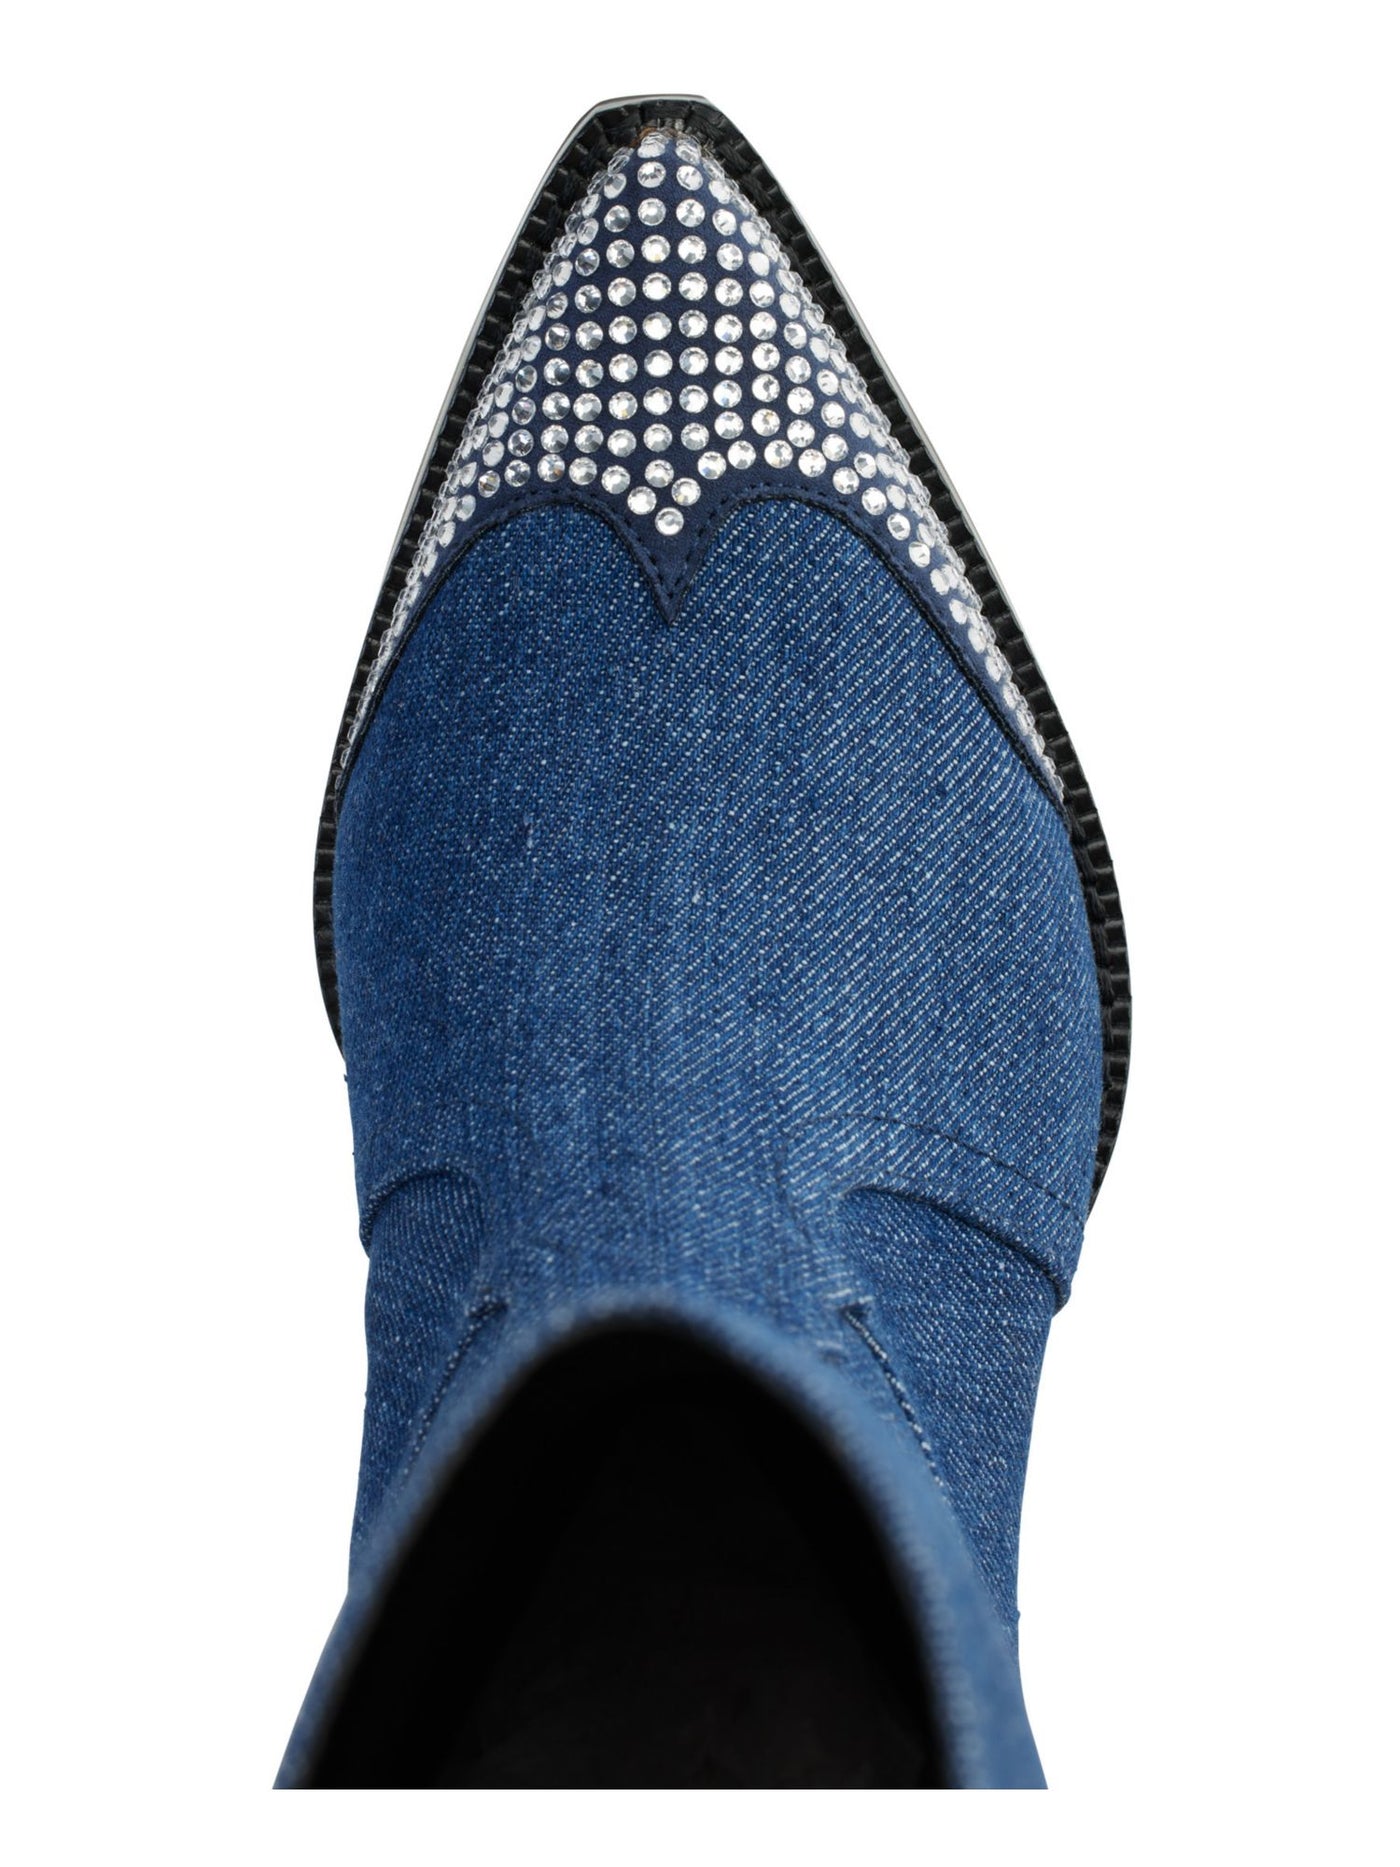 KARL LAGERFELD Womens Blue Embellished Paris Pointed Toe Block Heel Western Boot 7